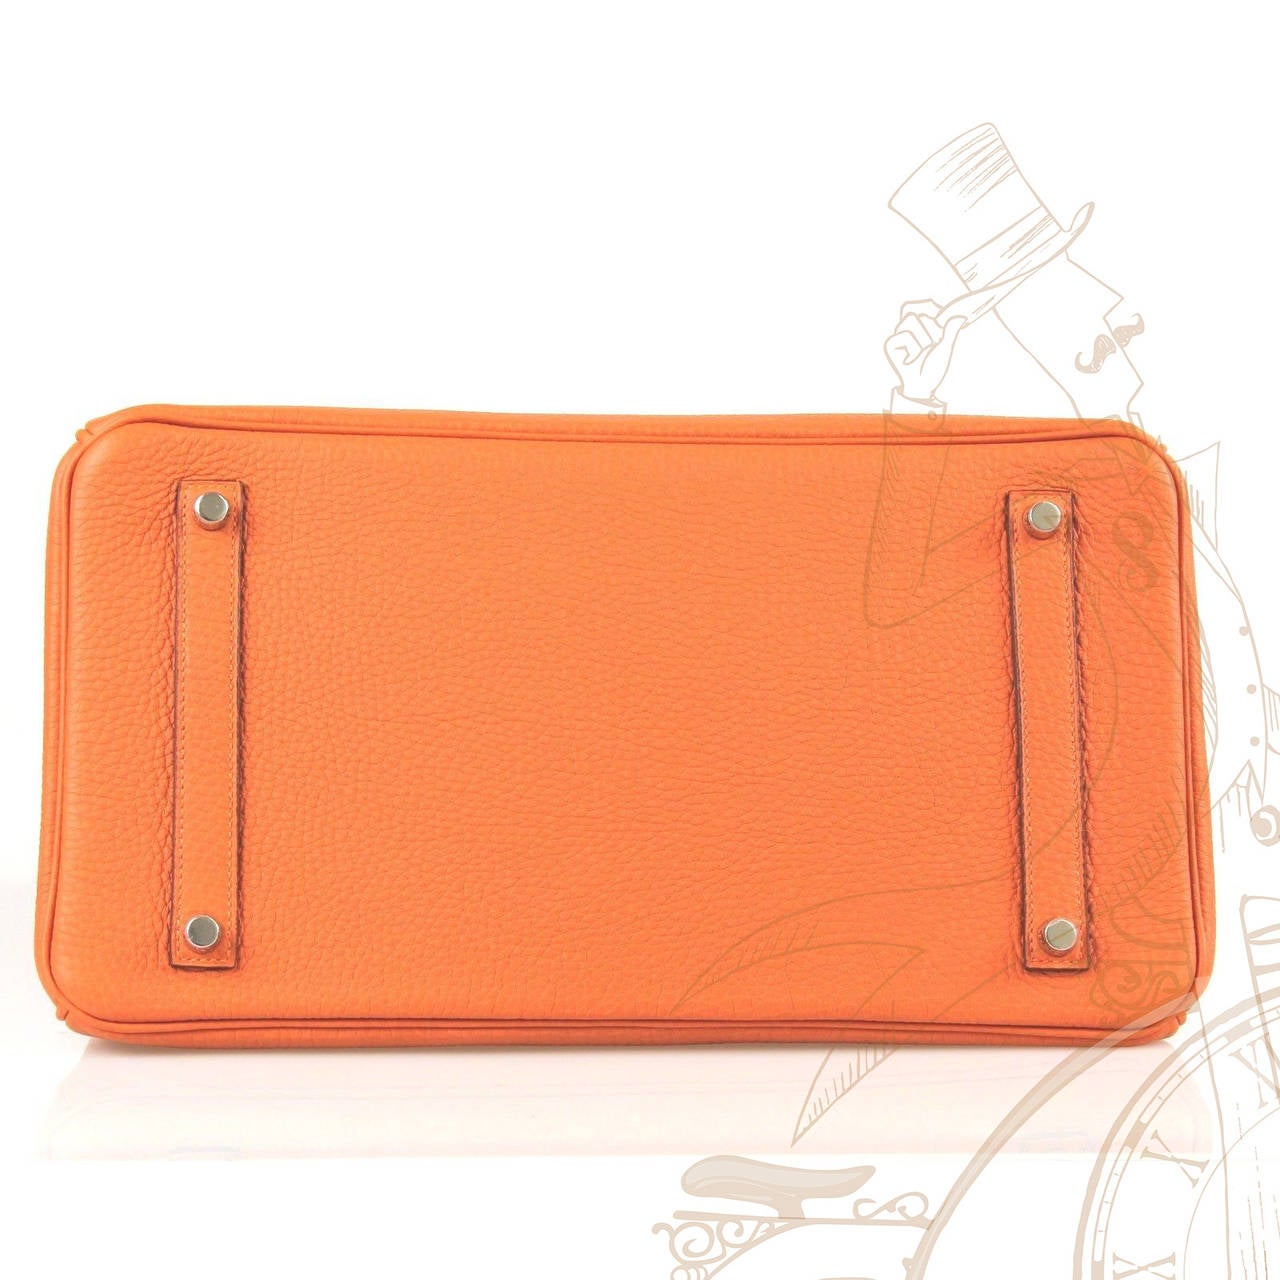 Hermes Togo Leather Silver Hdw 35 Cm Birkin Orange Tote Bag For Sale 1